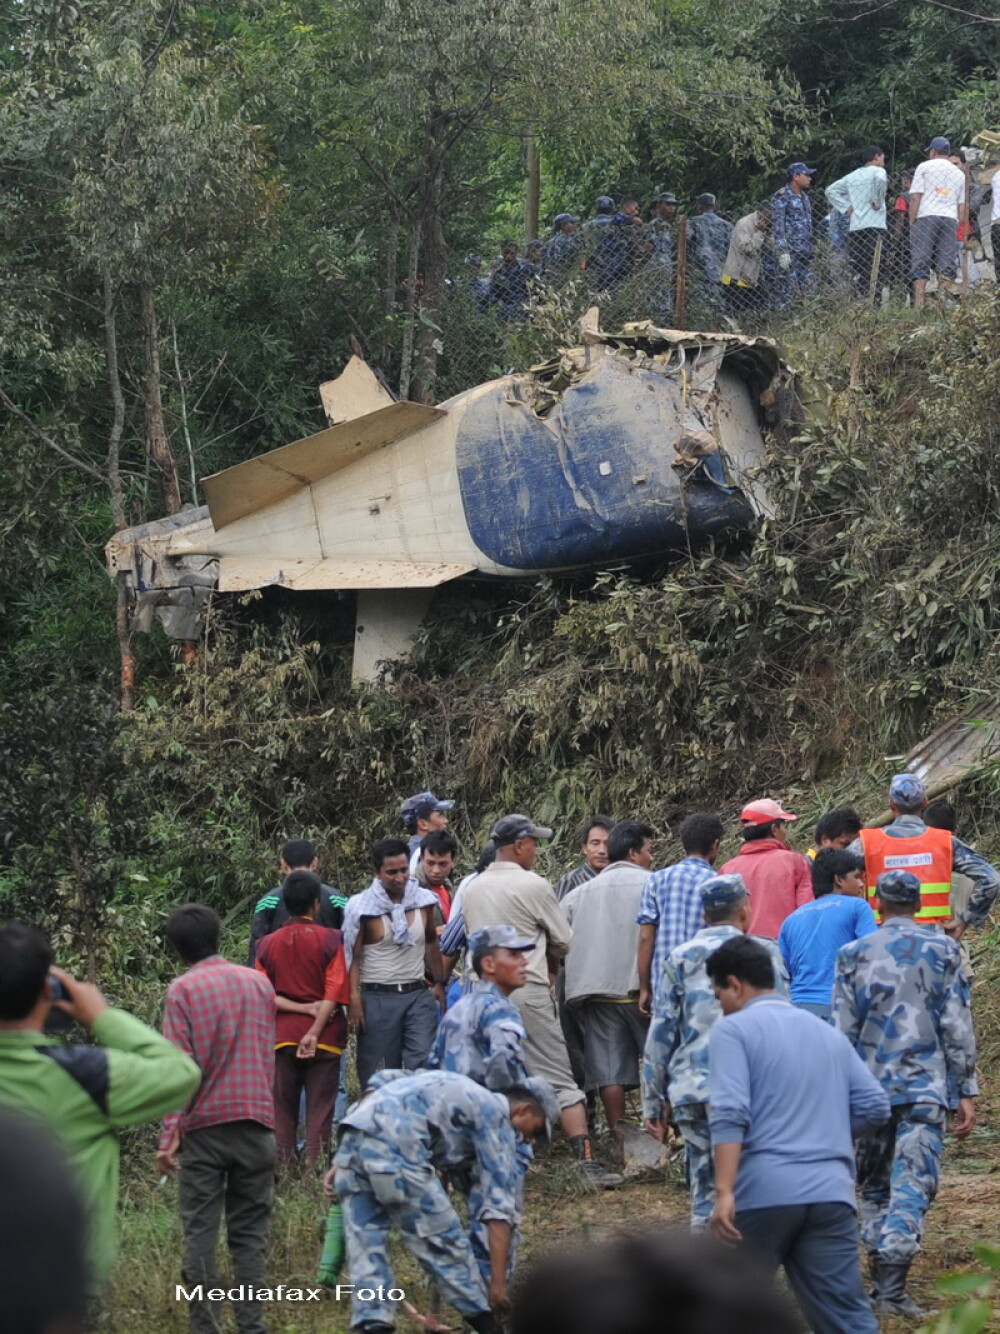 19 morti, majoritatea turisti straini, intr-un accident aviatic in Nepal. GALERIE FOTO - Imaginea 6